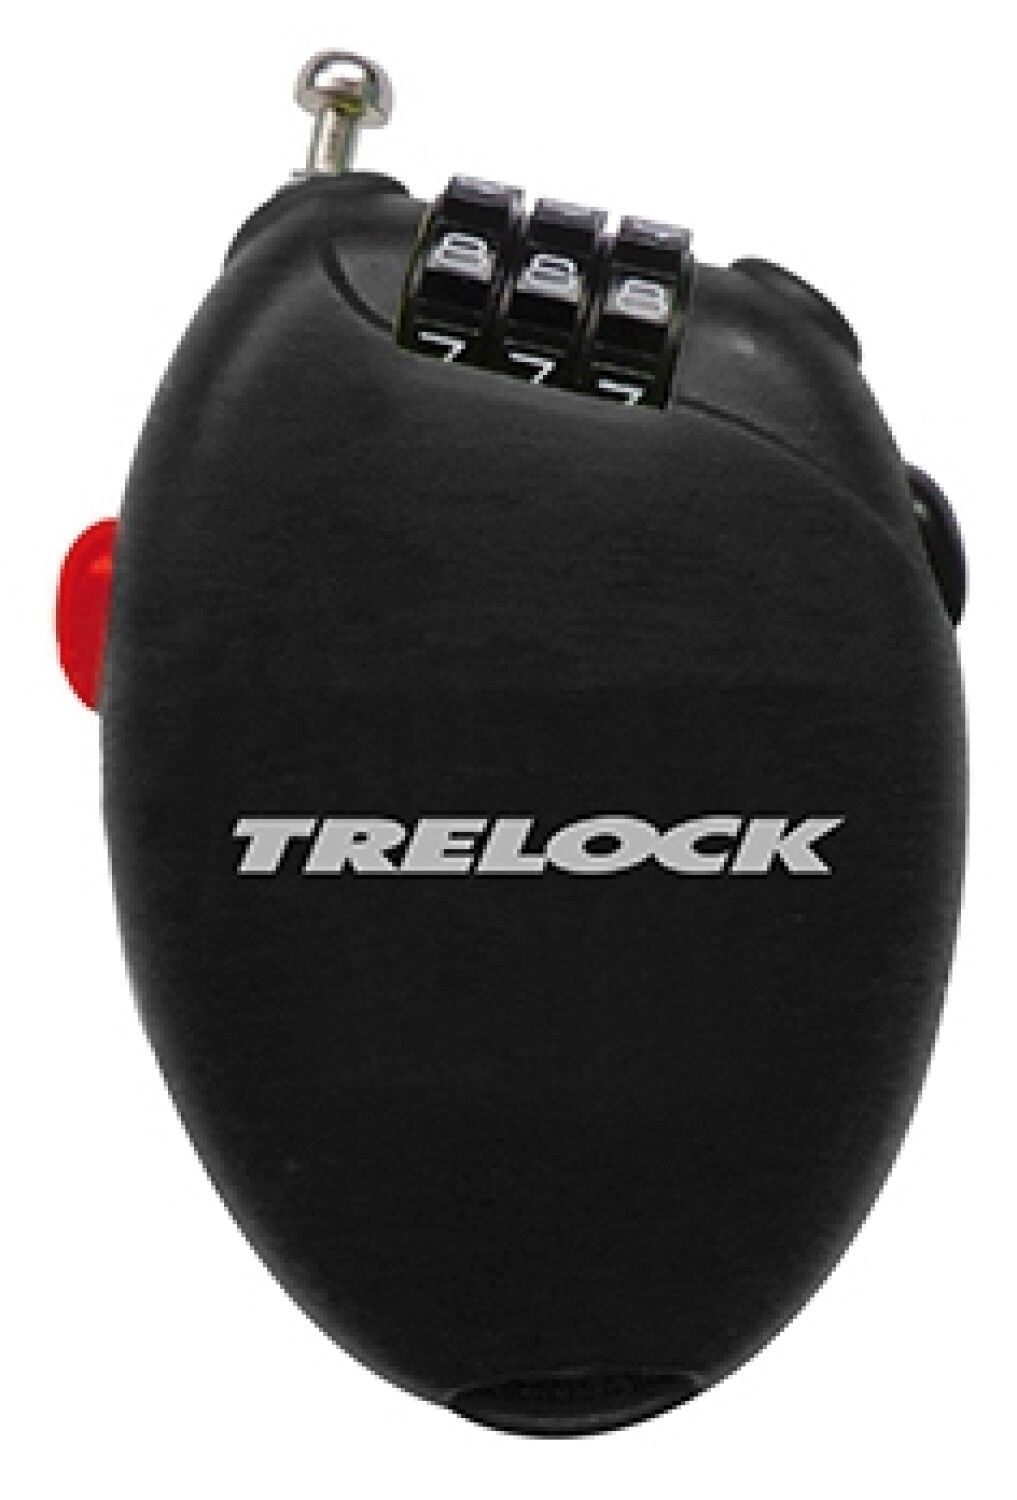 Trelock RK 75 POCKET (Bild 1)